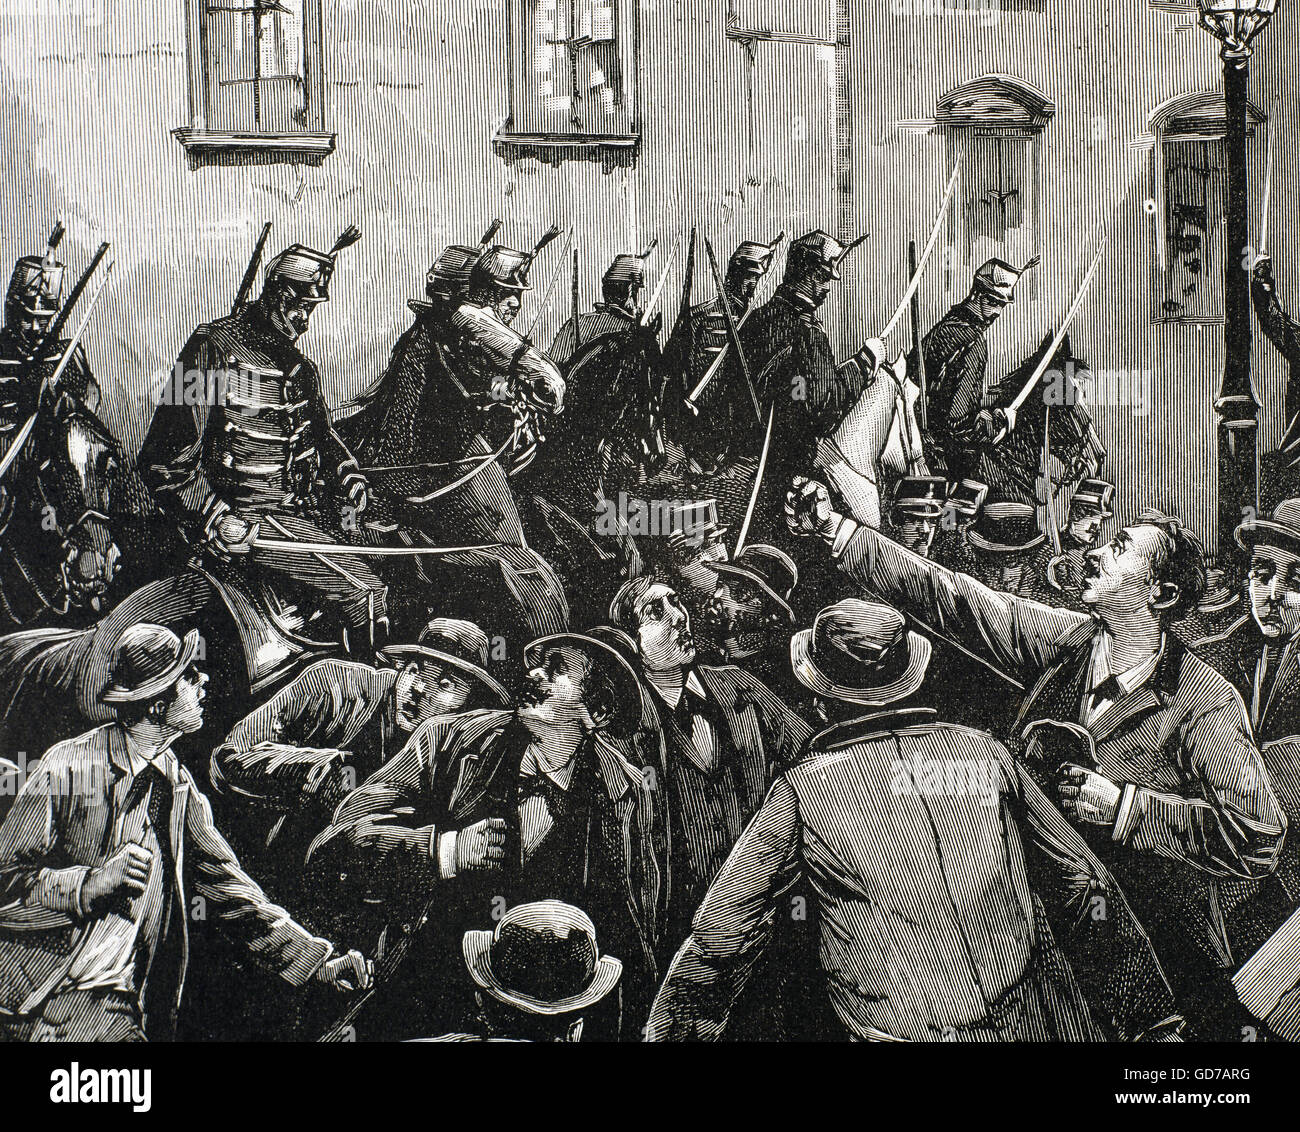 Austria. Viena. El movimiento laboral. Cargo de hussars austriaca contra los huelguistas se amotinaron en el barrio de New-Lerchenfeld, 8 de abril de 1890. Grabado. Foto de stock